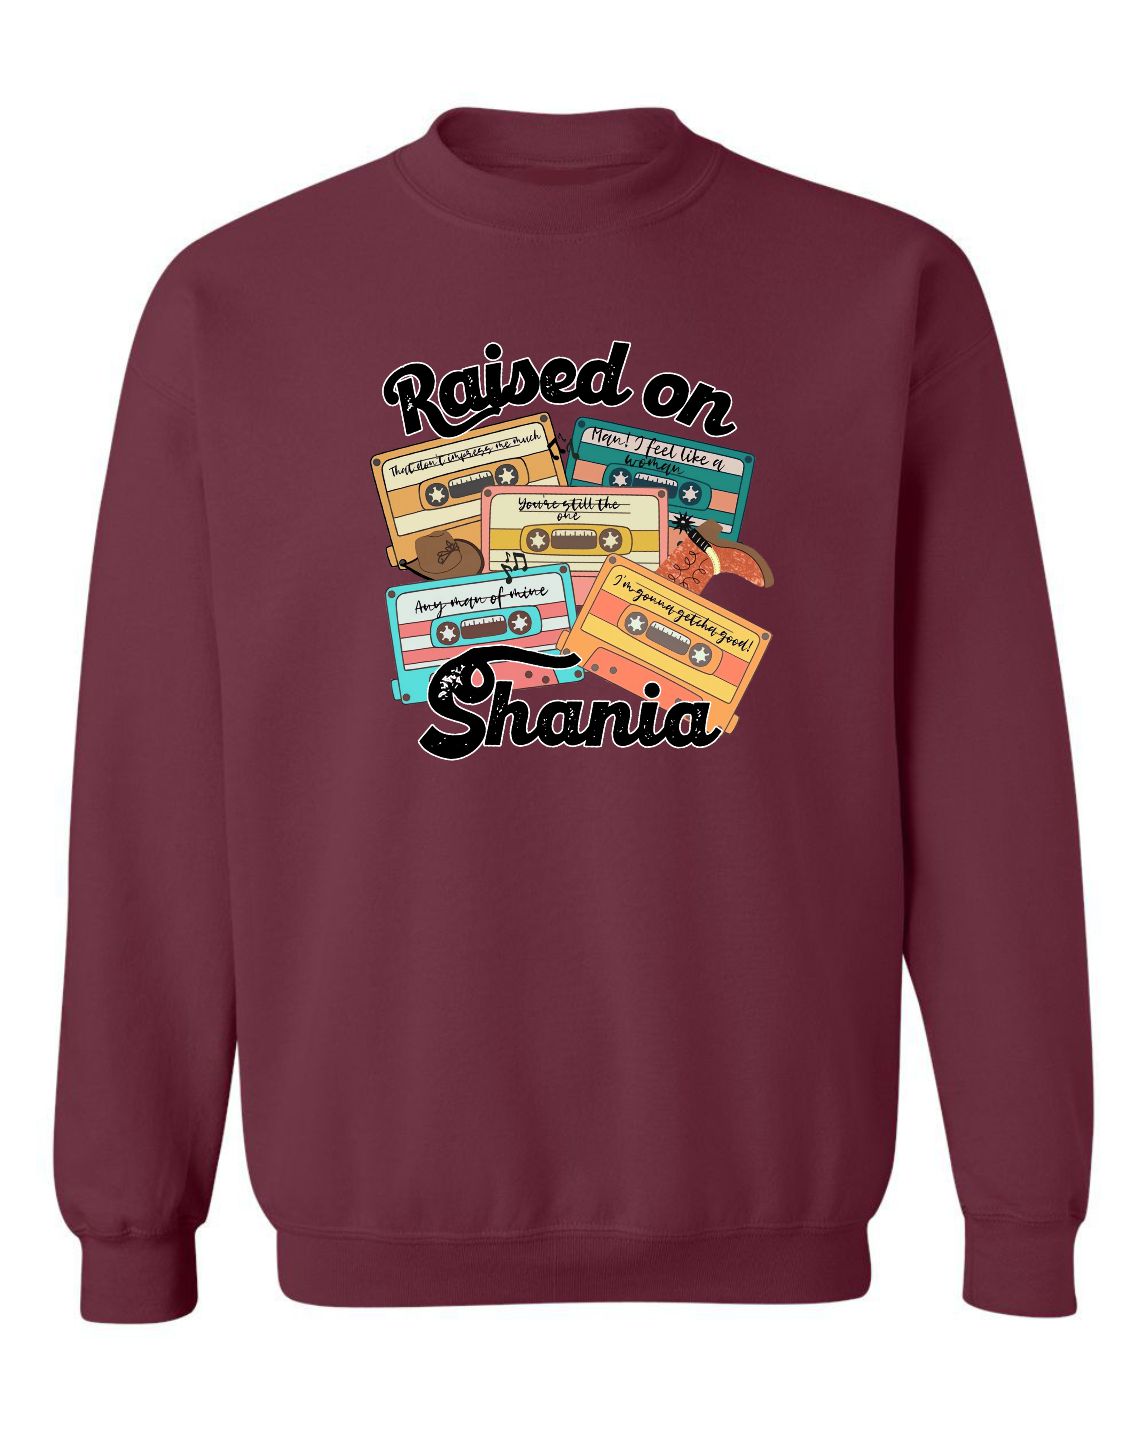 "Raised On Shania" Unisex Crewneck Sweatshirt